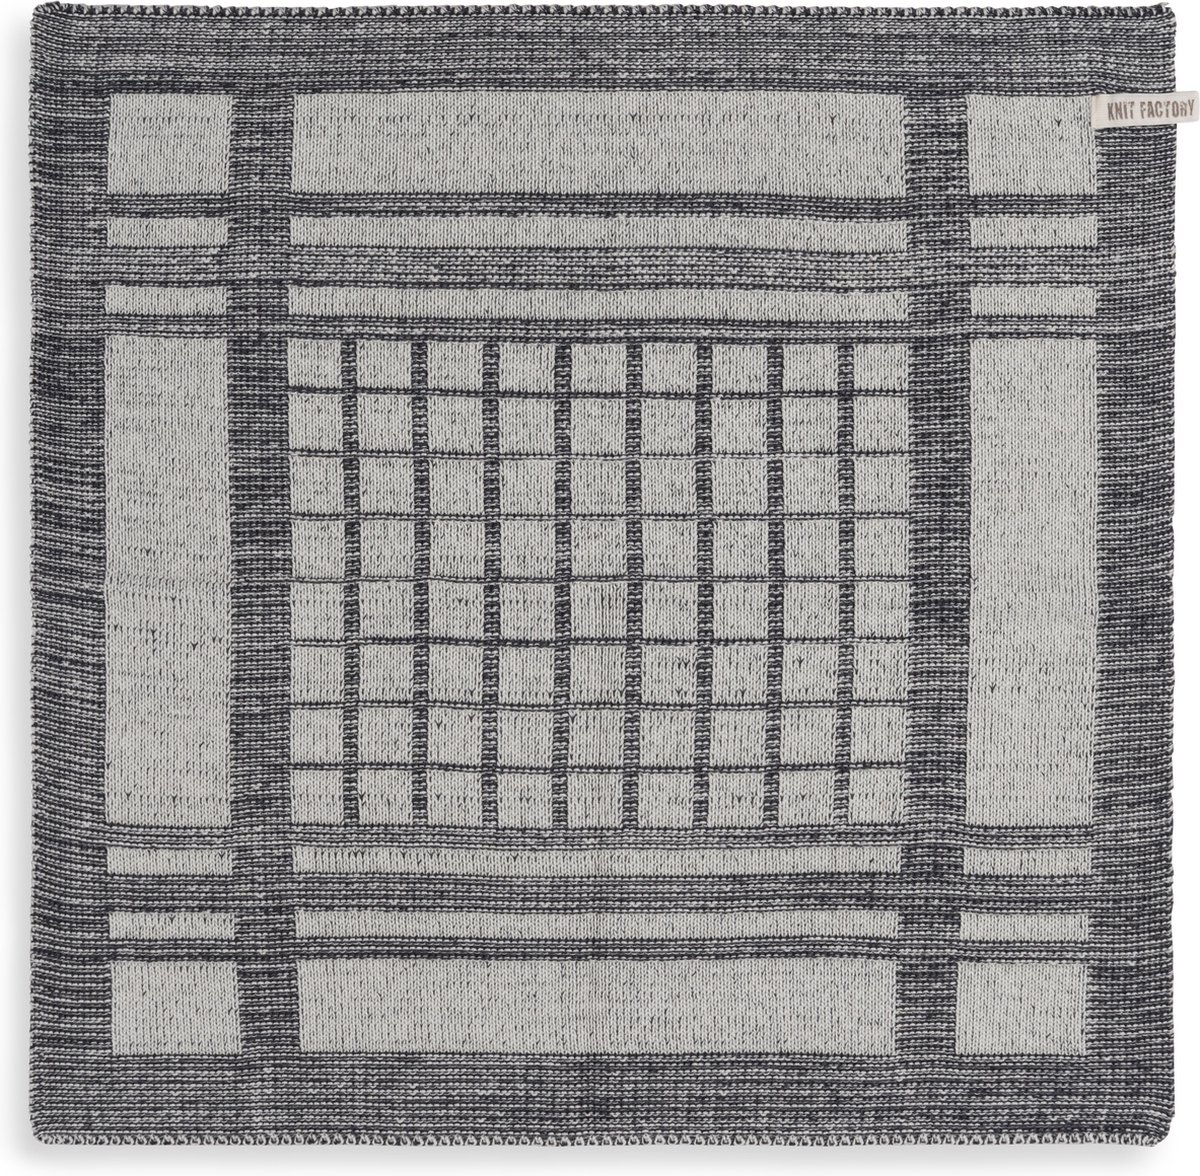 Knit Factory Gebreide Keukendoek - Keukenhanddoek Emma - Handdoek - Vaatdoek - Keuken doek - Ecru/Antraciet - 50x50 cm